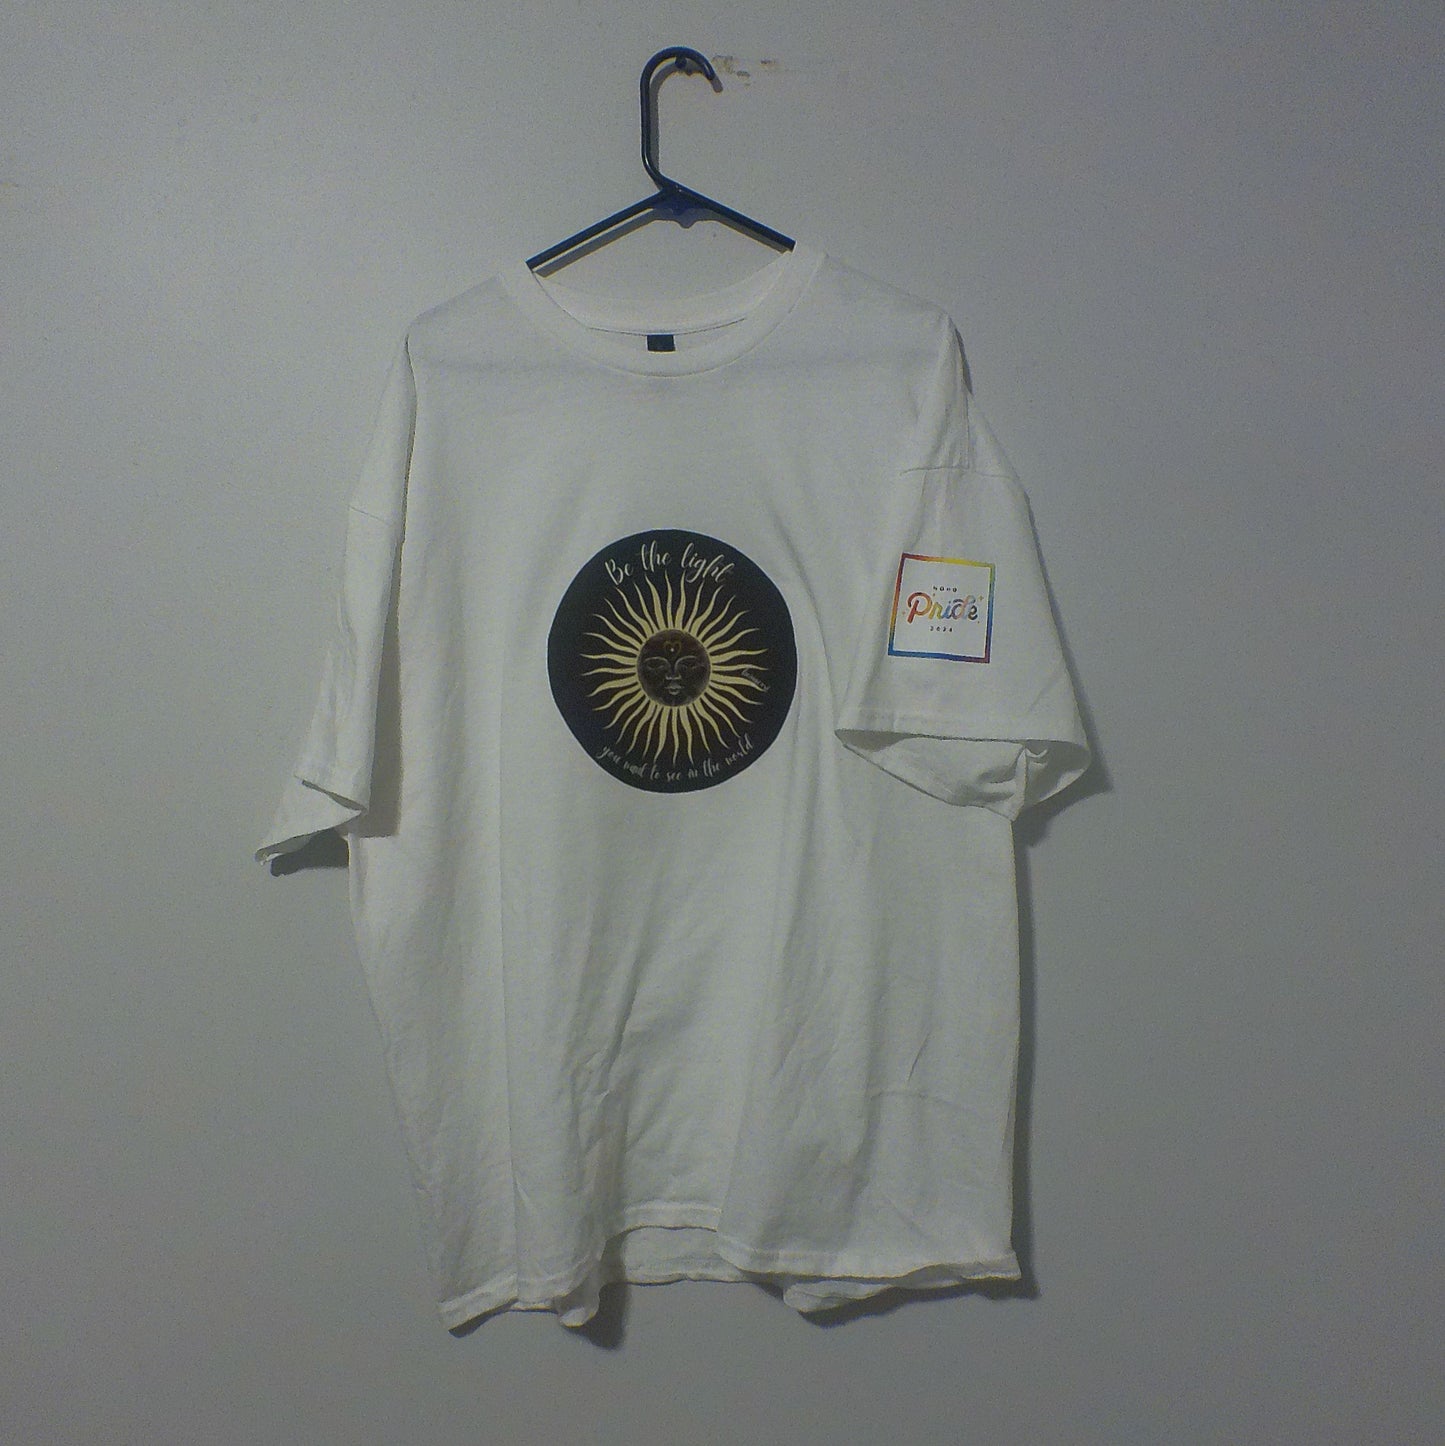 Commemorative Noho Pride '24 "Be the light" Sun T-shirt